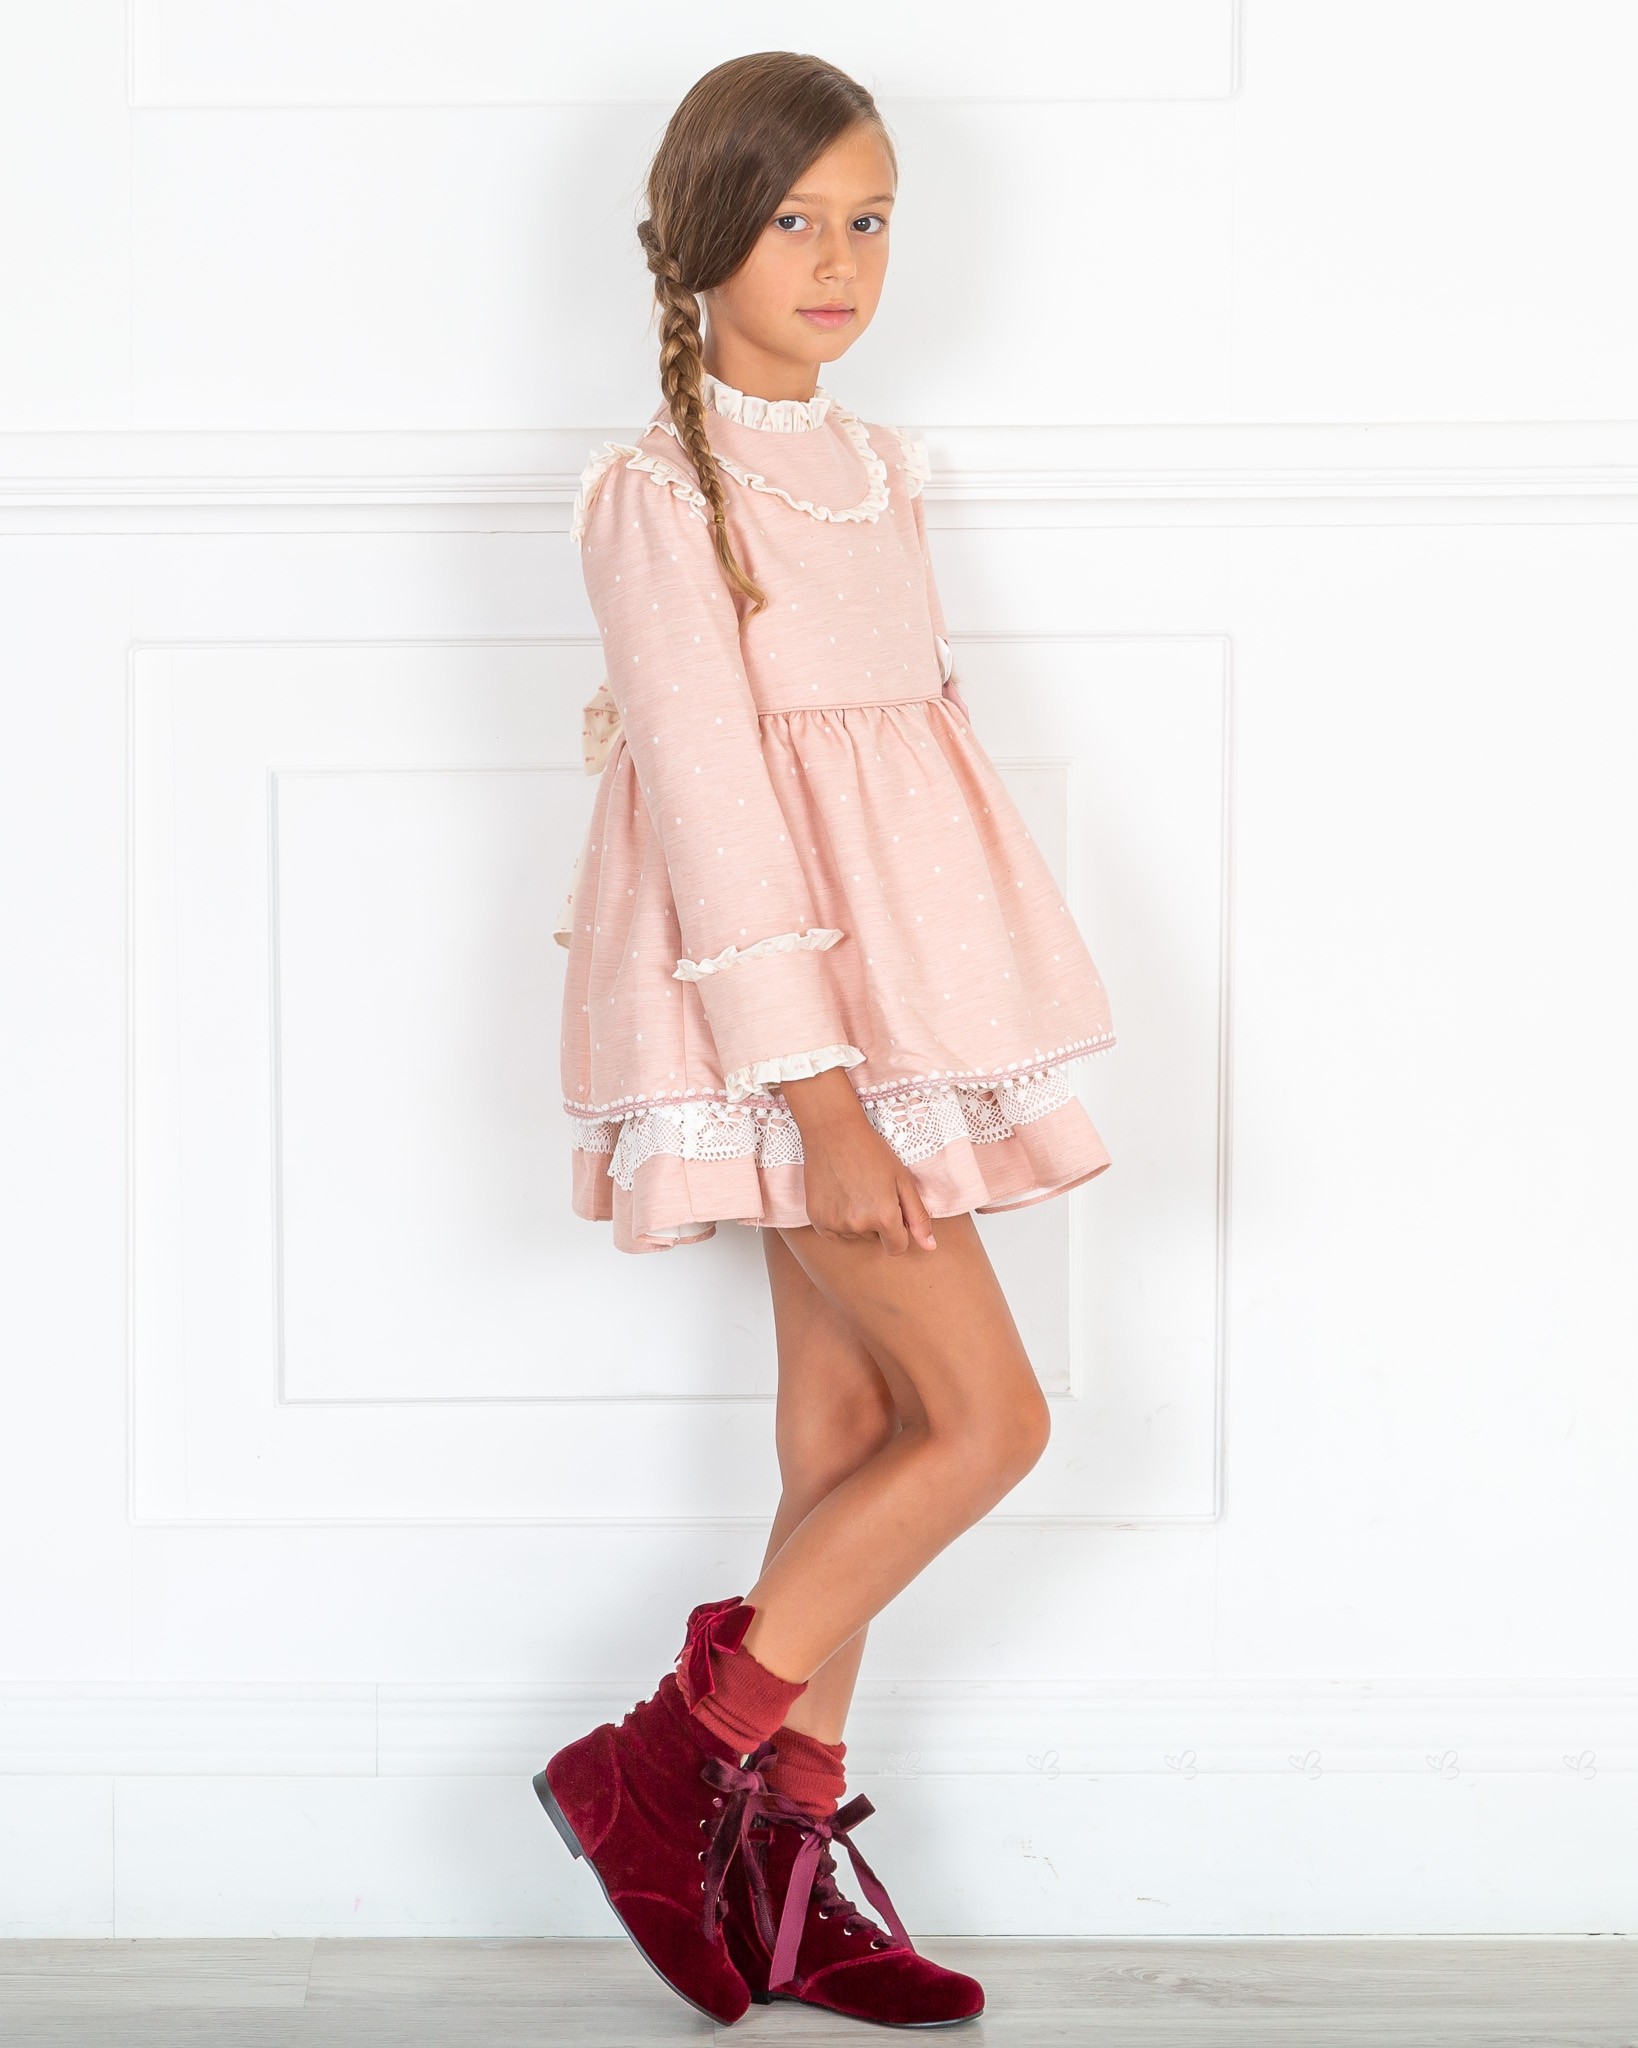 Outfit Niña Vestido Rosa Empolvado con Topitos & Botines Terciopelo Granate  | Missbaby